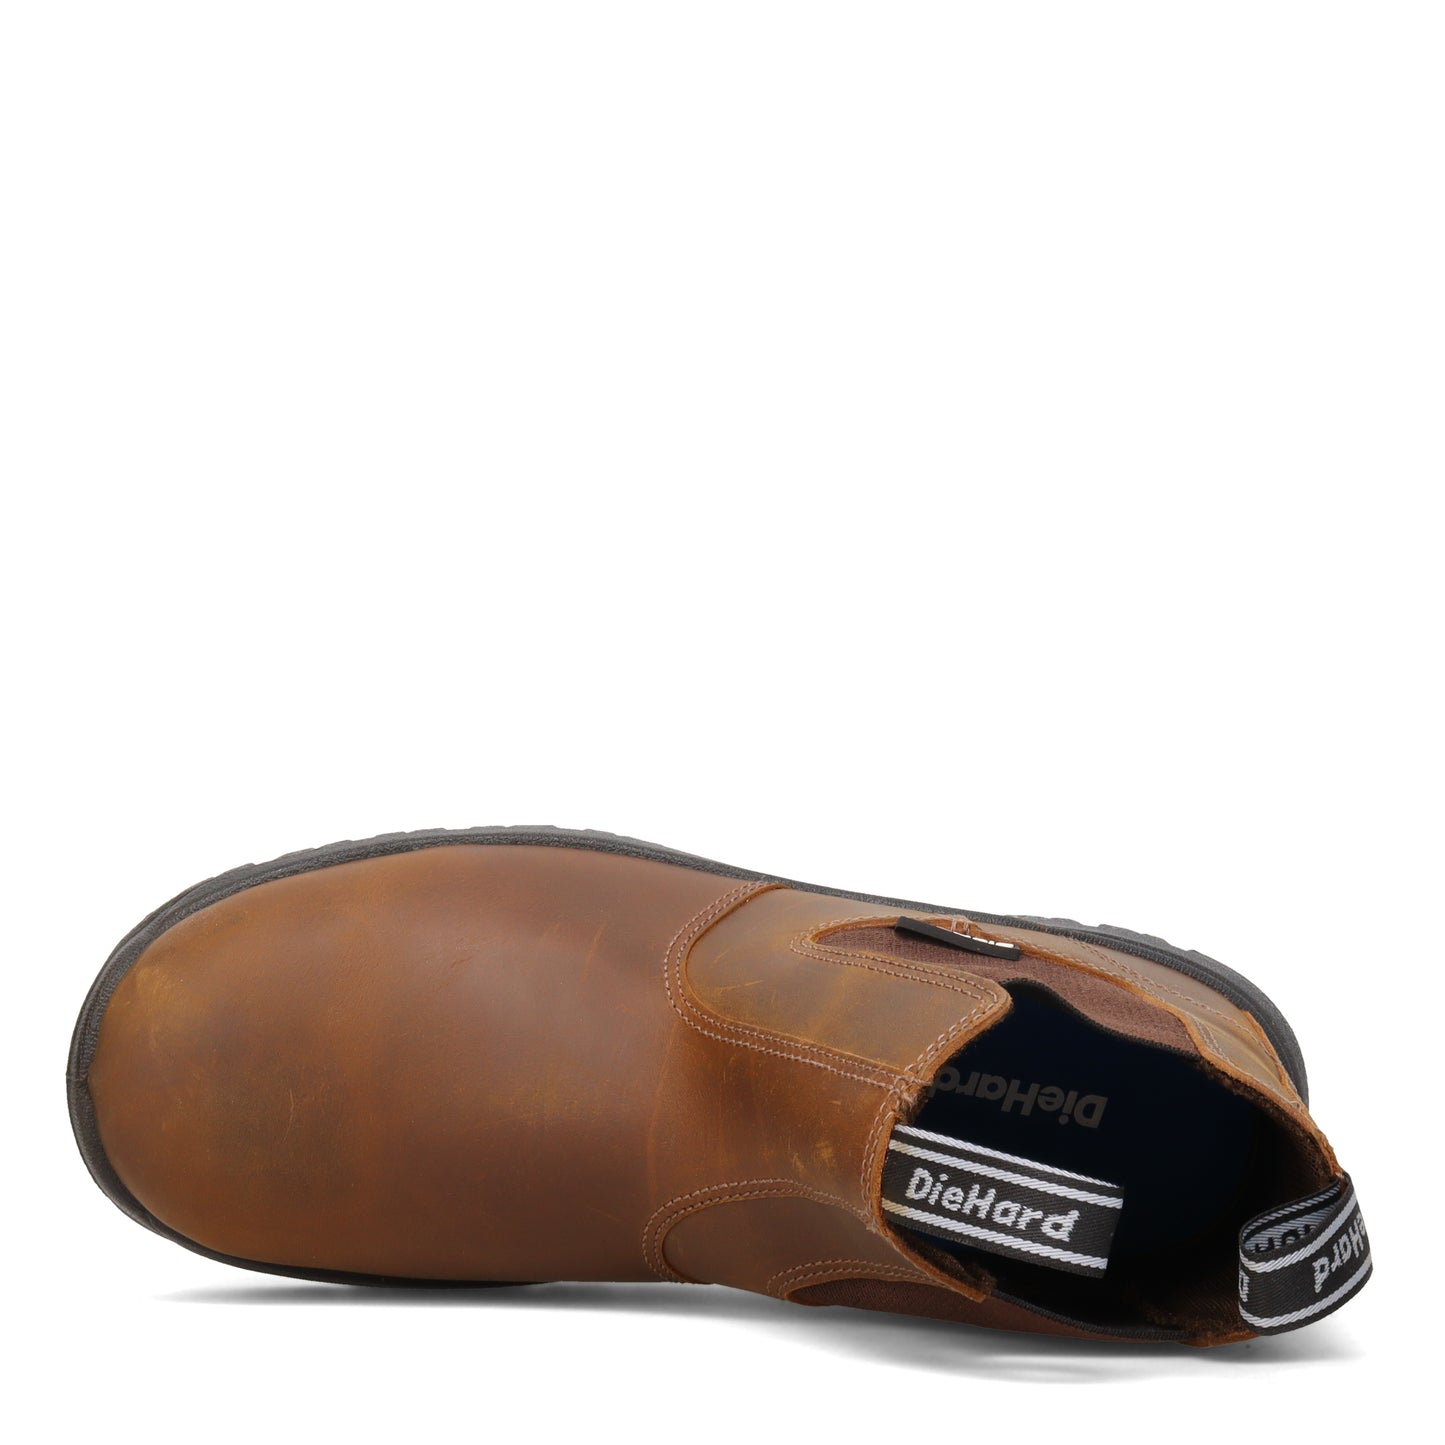 Peltz Shoes  Men's DieHard Polara Soft Toe Work Boot BROWN DH50227